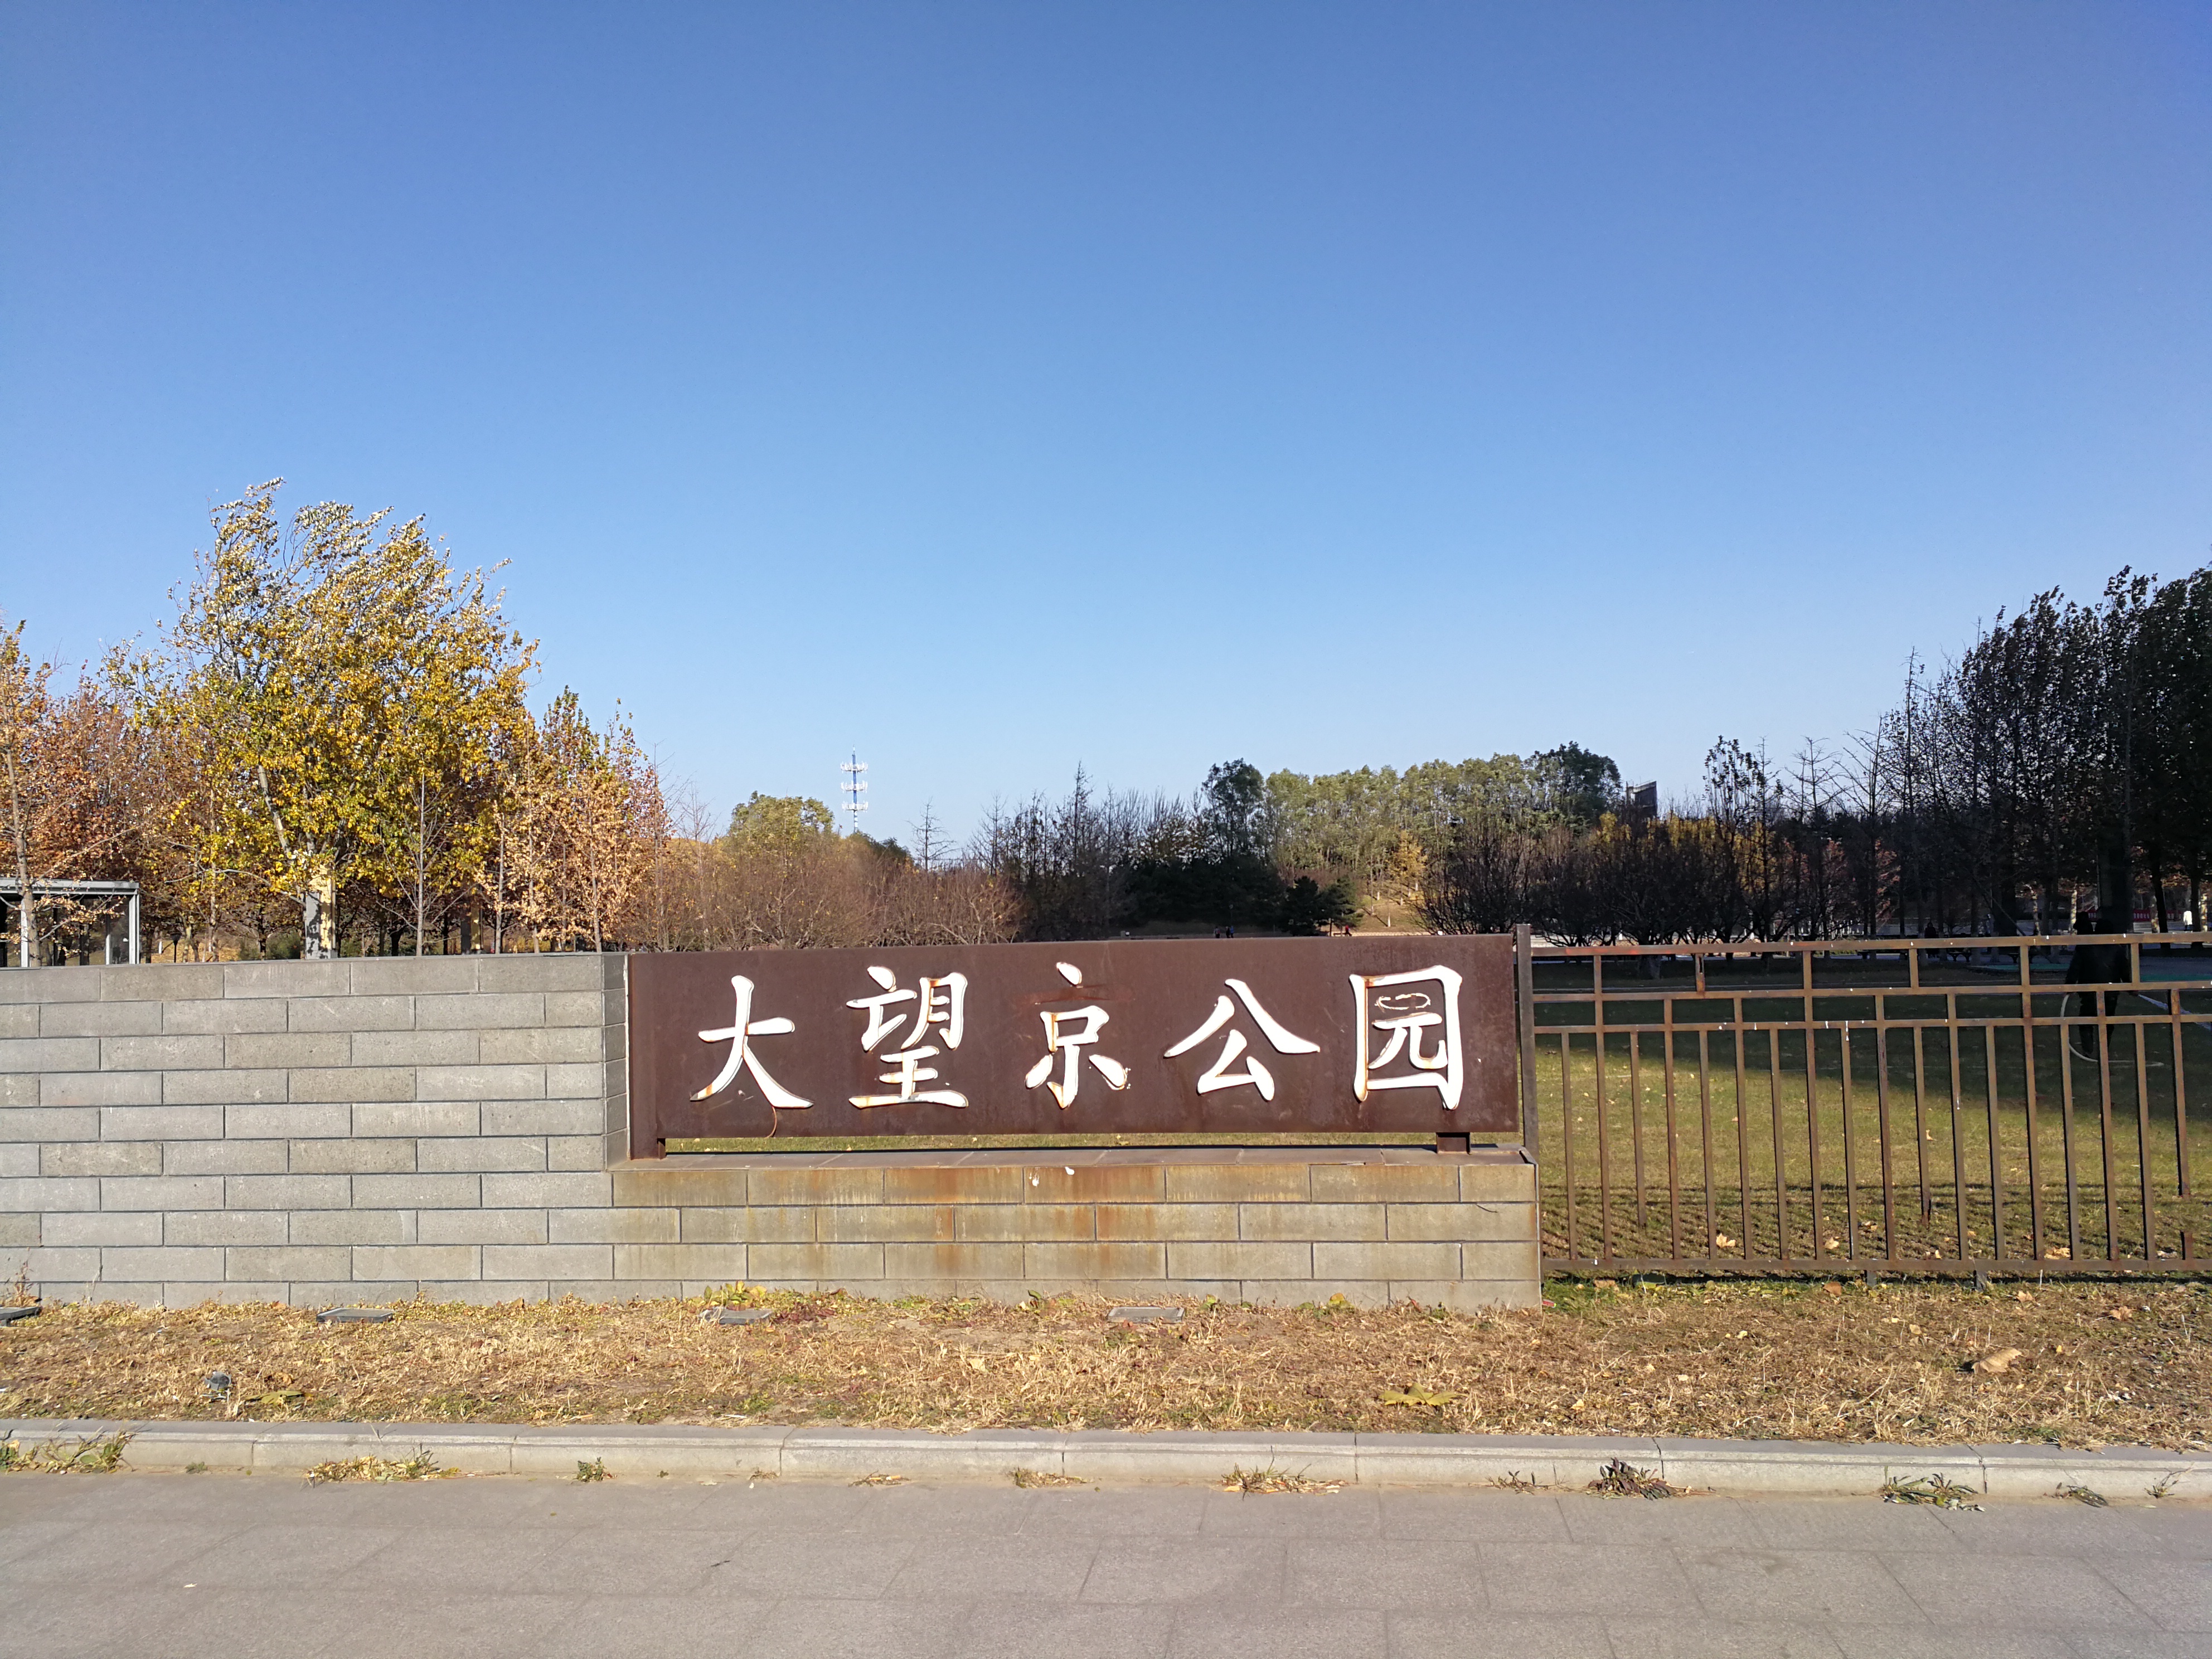 你去过北京大望京公园吗?它的红叶和金黄色的树叶不逊